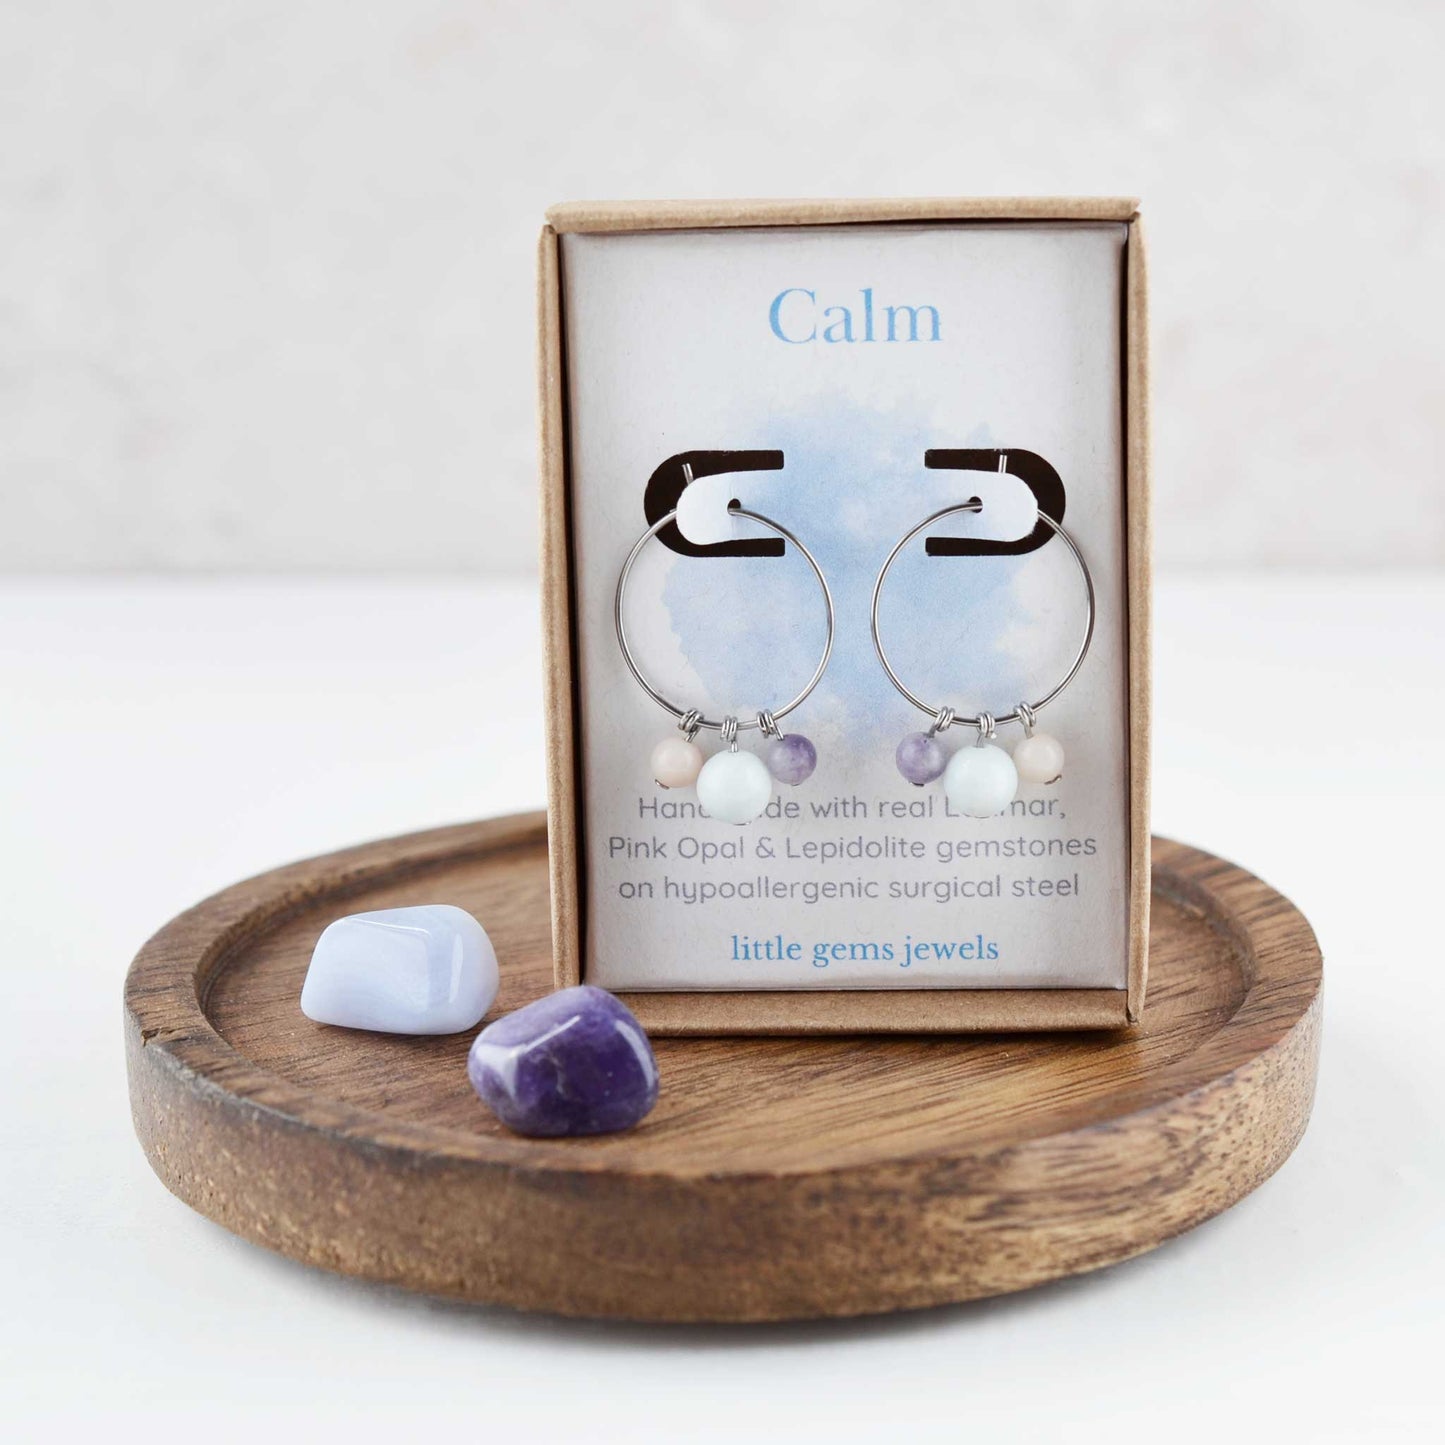 Gemstones for calm hoop earrings in eco friendly gift box